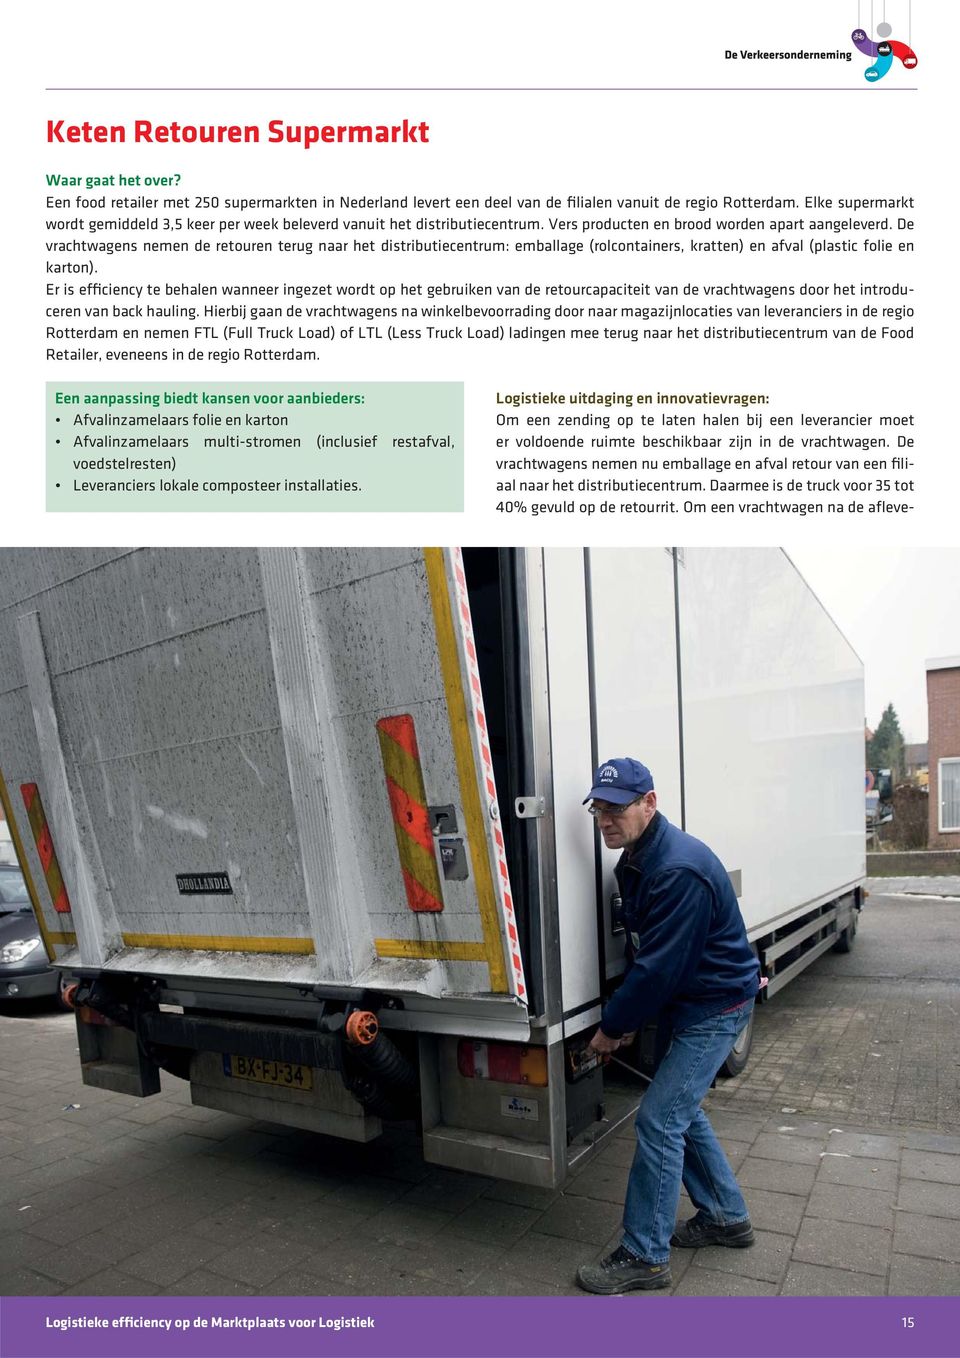 De vrachtwagens nemen de retouren terug naar het distributiecentrum: emballage (rolcontainers, kratten) en afval (plastic folie en karton).